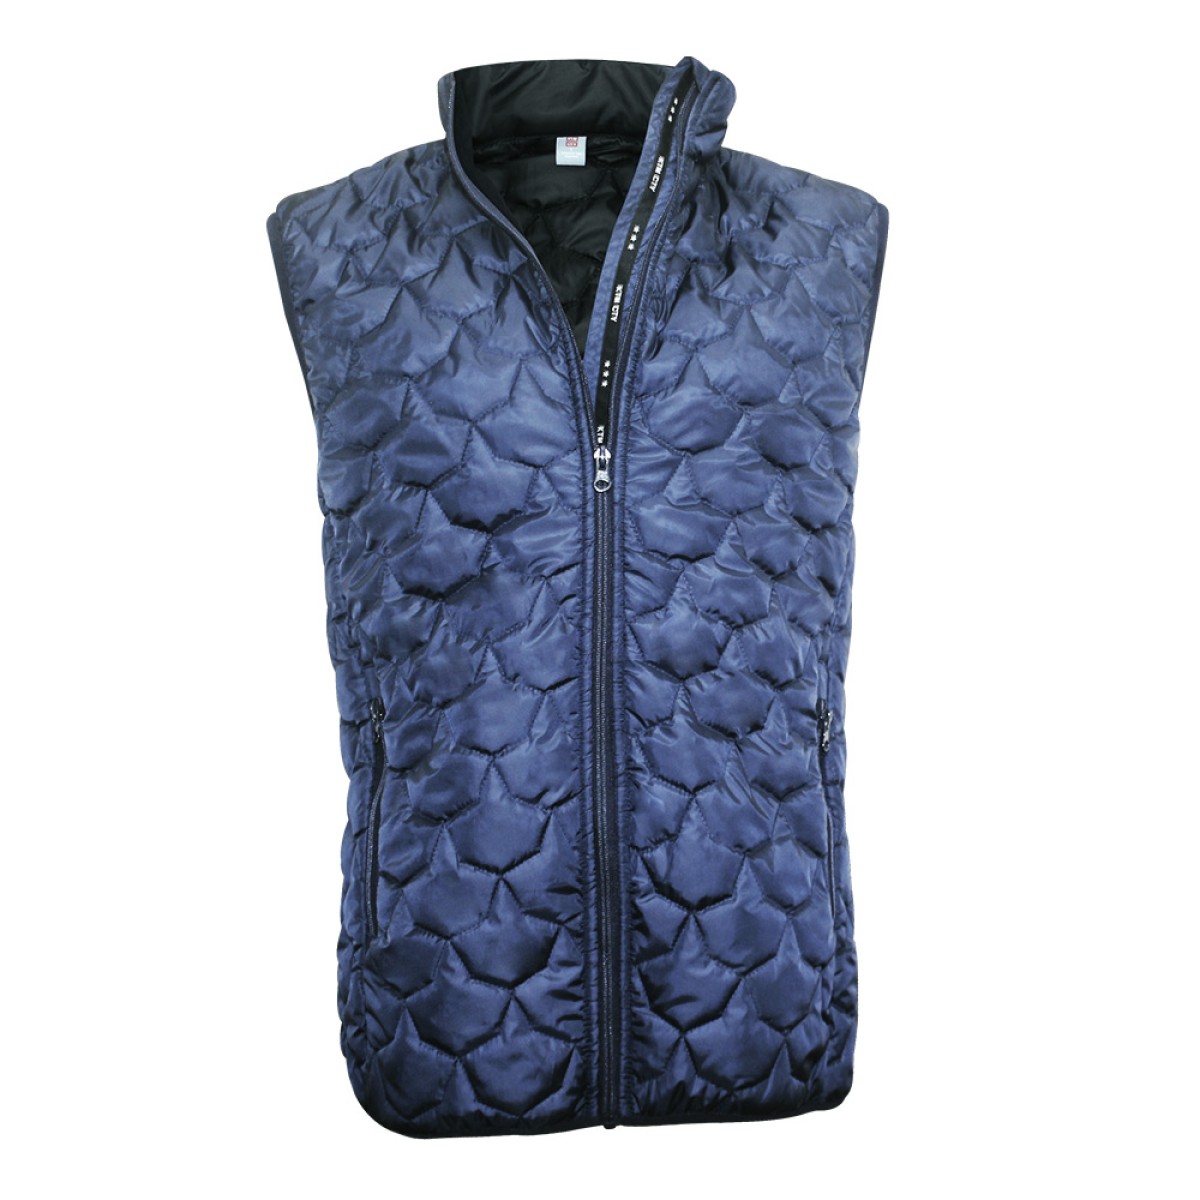 men-polyfiber-half-jacket-kpj05912-5a-1